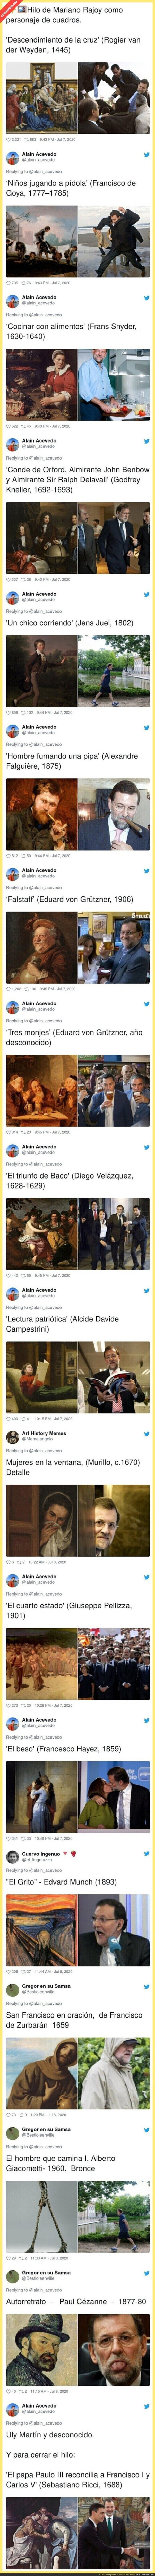 El maravilloso hilo de cuadros históricos comparados a fotos de Mariano Rajoy que se ha vuelto totalmente viral